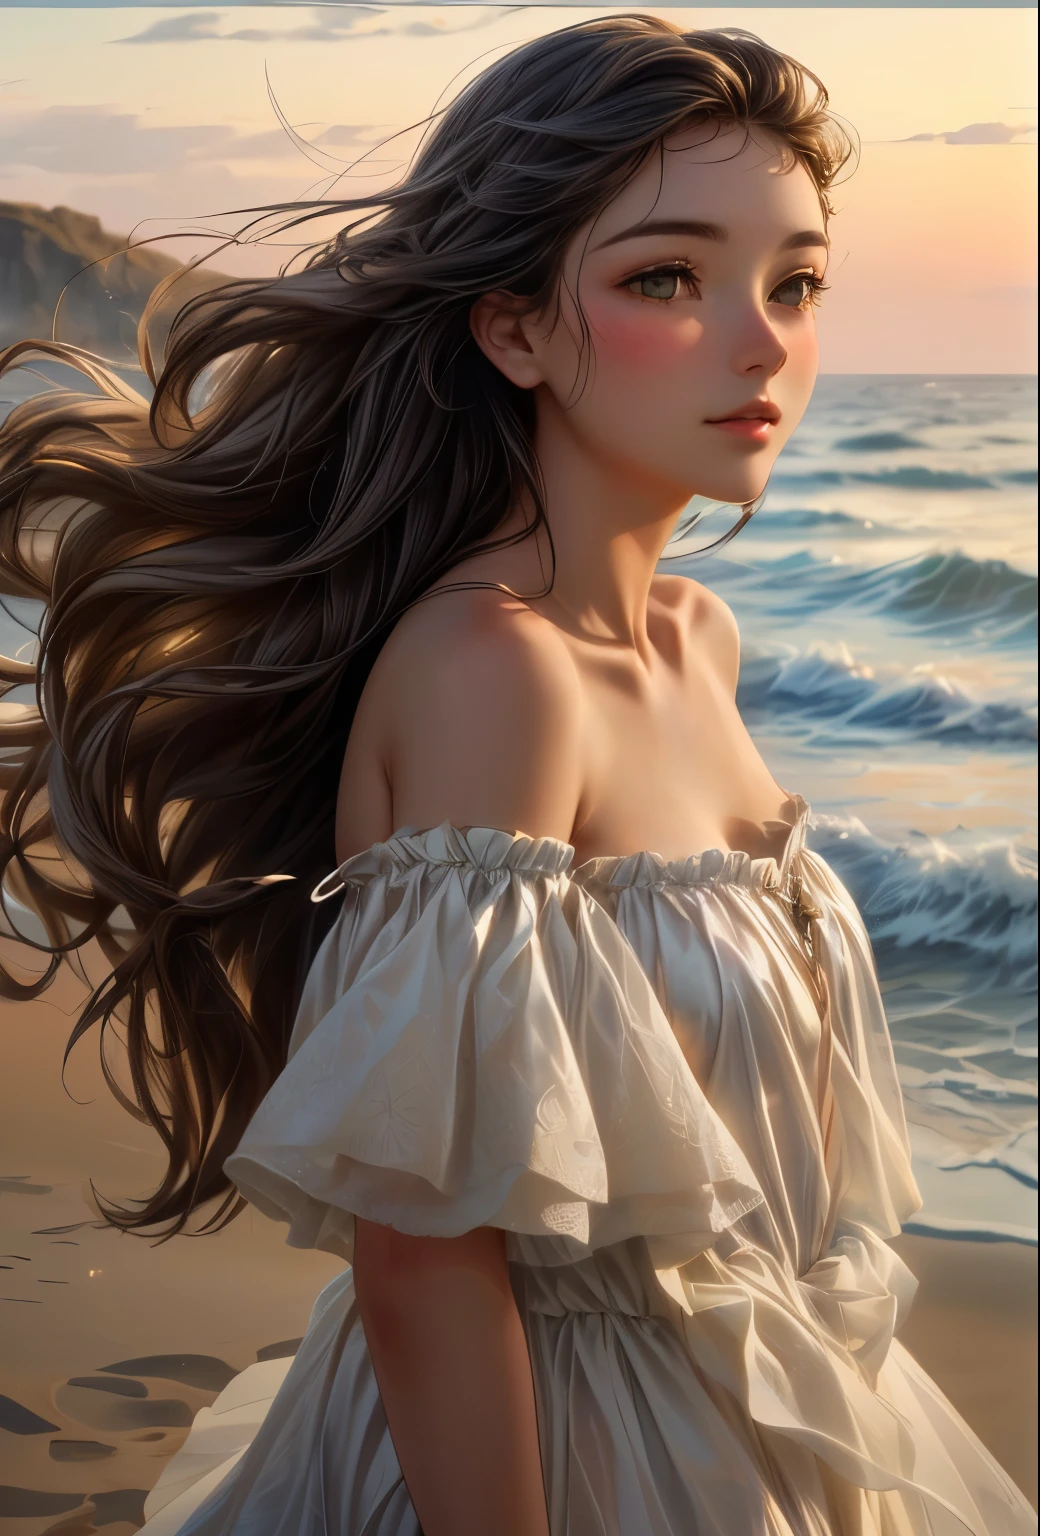 
Das georgische Mädchen am Meer, ihr wallendes Kleid weht im Wind, einen ätherischen Anblick schaffen. Dieses exquisite Ölgemälde fängt ihre Anmut und Verletzlichkeit ein, als sie am Sandstrand steht. Die sanften Farben des Sonnenuntergangs werfen einen warmen Glanz auf ihre zarten Gesichtszüge, während der sanfte Wind ihr Haar sanft zerzaust. Das Bild strahlt eine heitere Schönheit aus, lässt den Betrachter in die Ruhe des Augenblicks eintauchen.